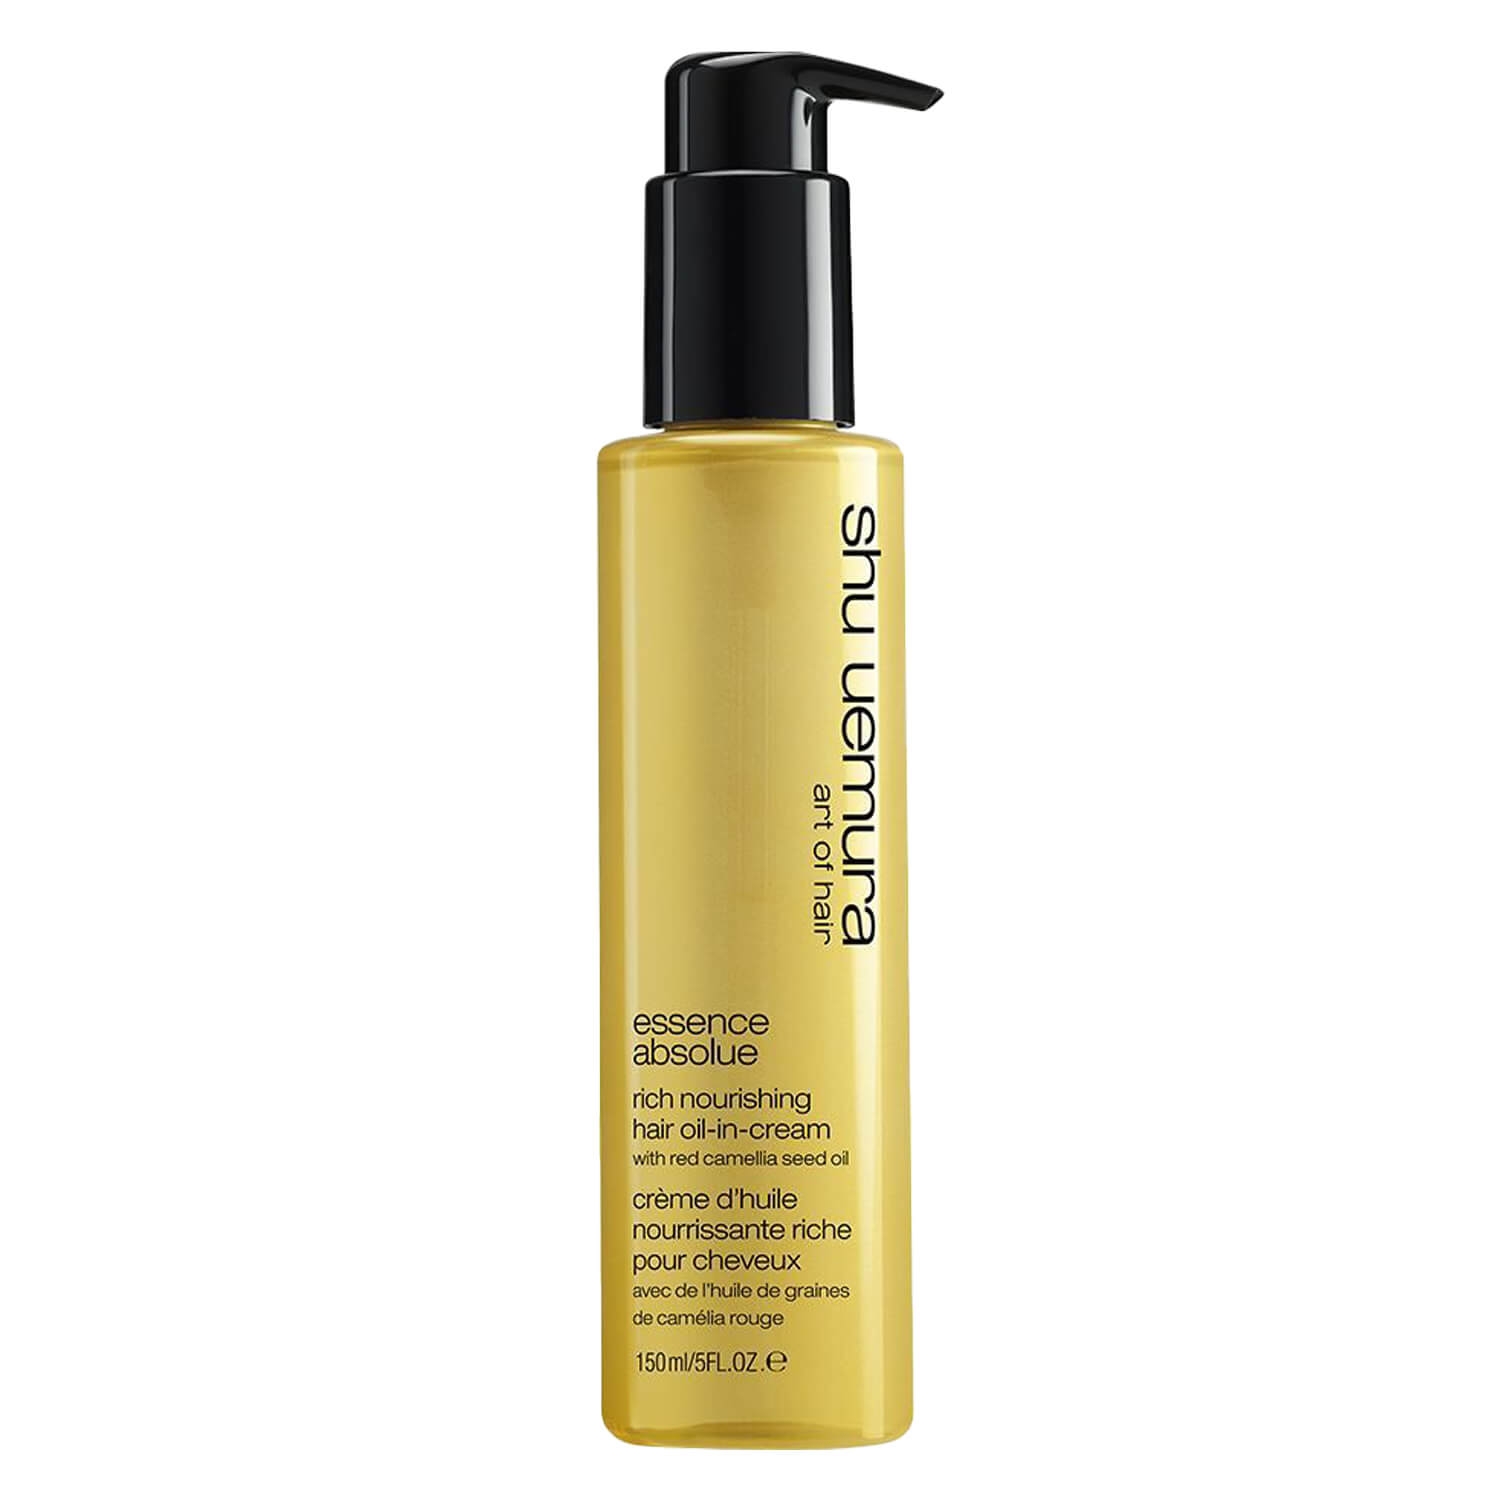 Produktbild von Essence Absolue - Rich Nourishing Hair Oil-In-Cream